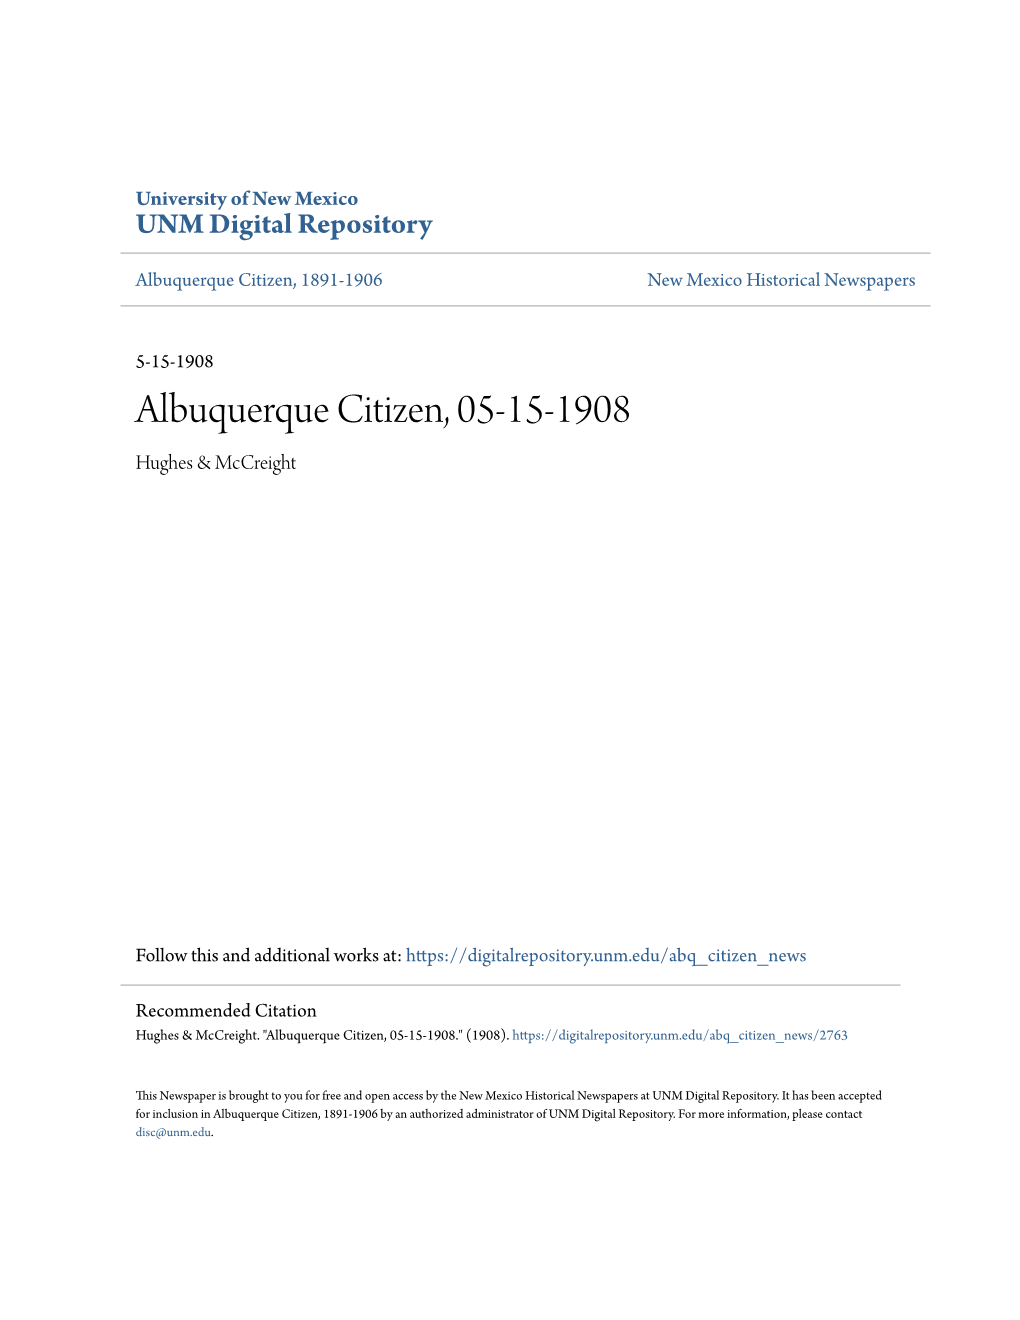 Albuquerque Citizen, 05-15-1908 Hughes & Mccreight